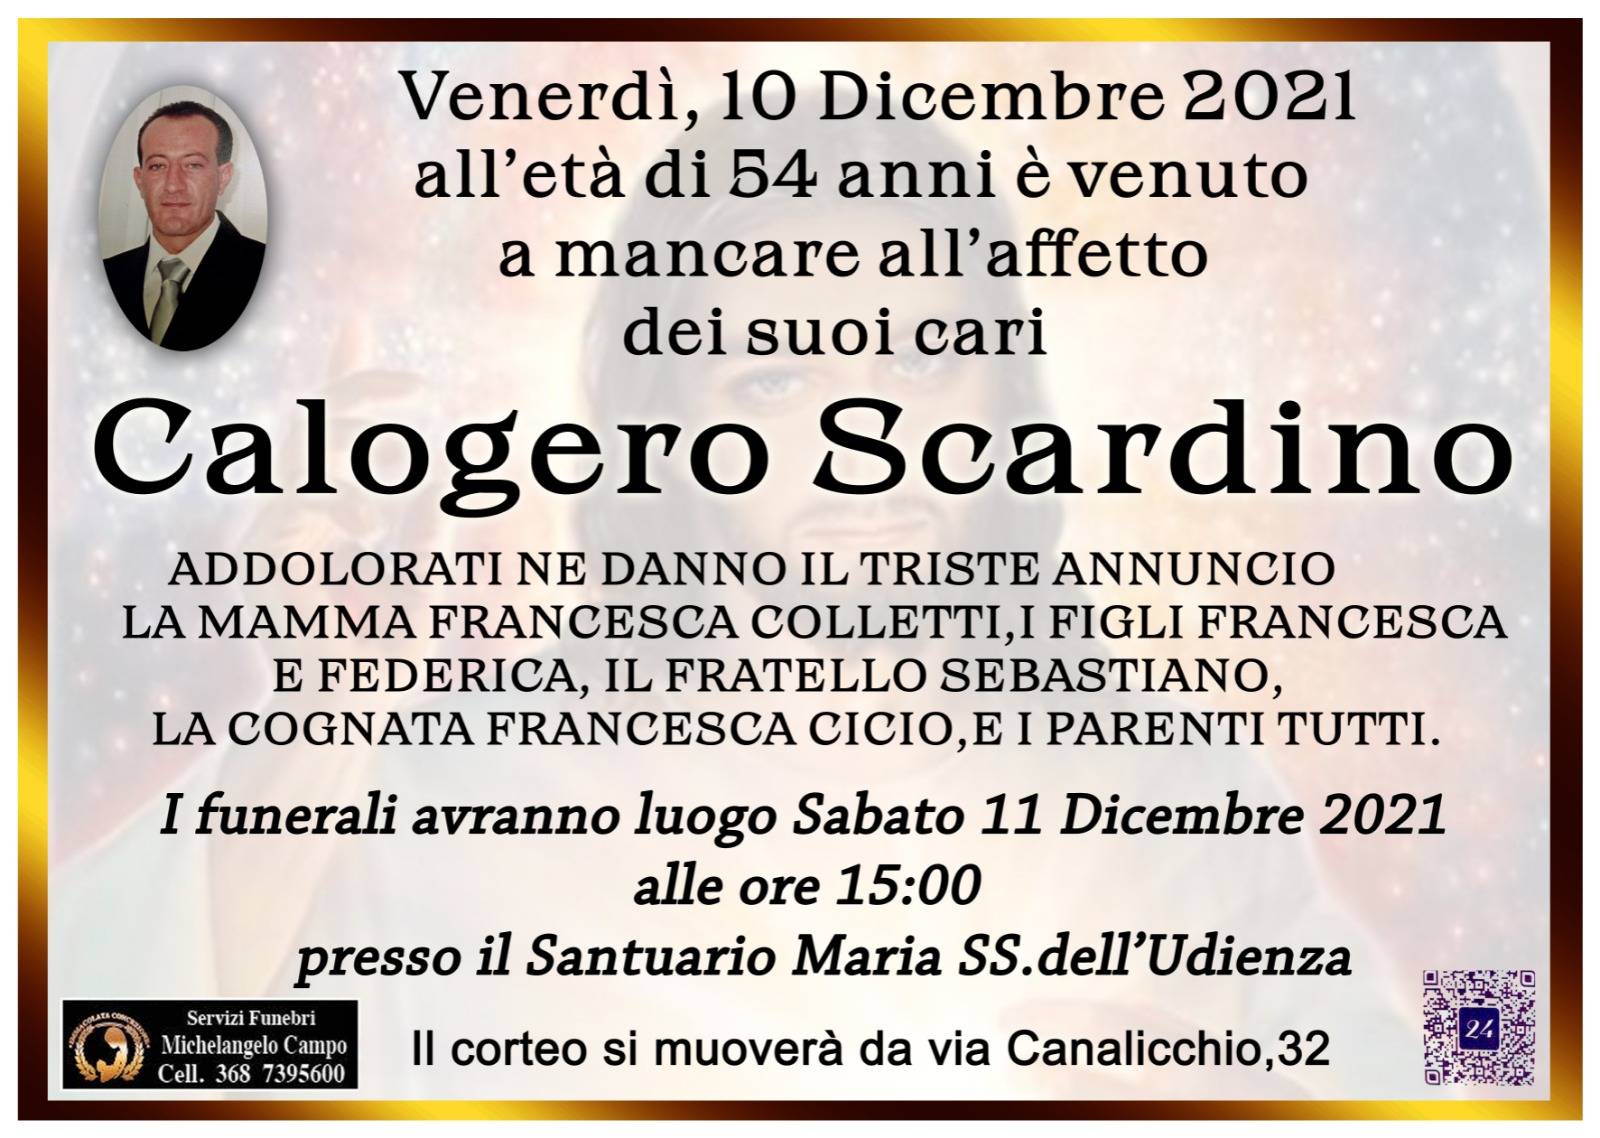 Calogero Scardino